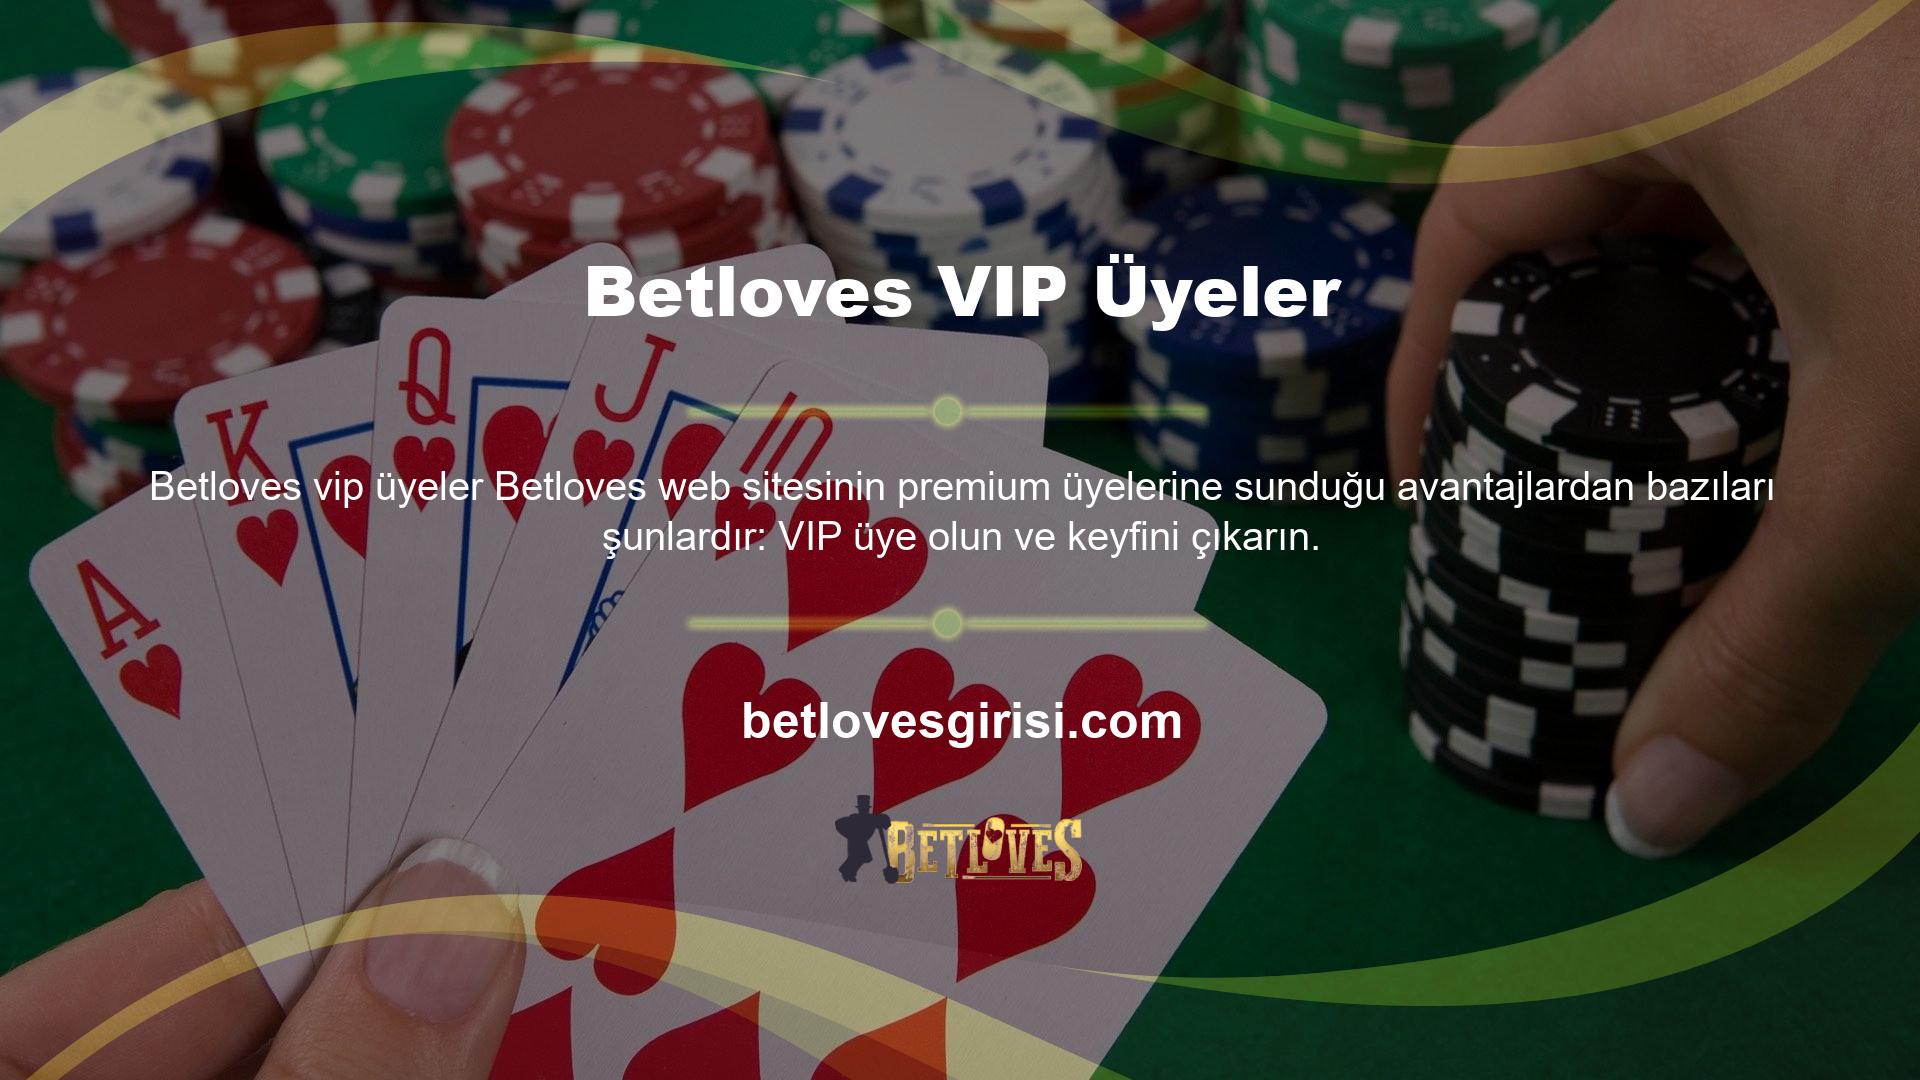 VIP üyeliği hakkında daha fazla bilgi için lütfen casino web sitesinin müşteri hizmetleriyle iletişime geçin